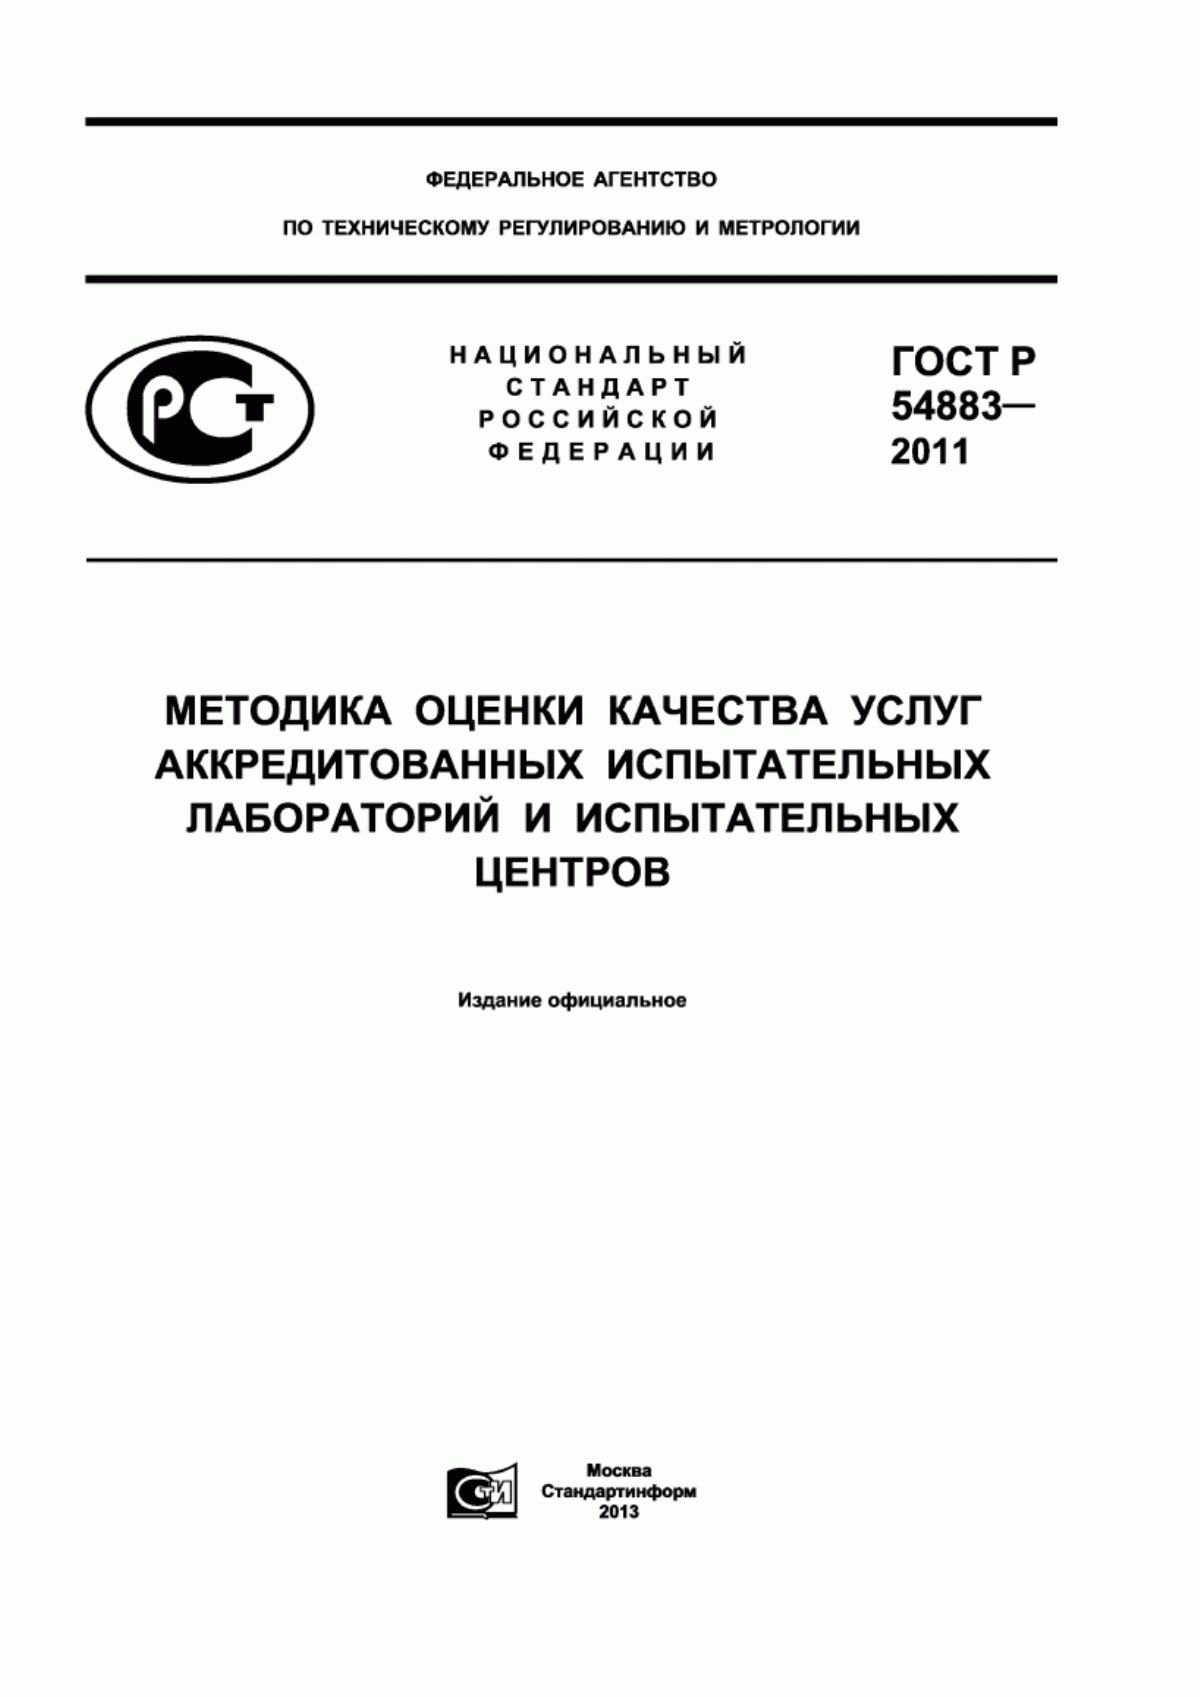 ГОСТ Р 54883-2011 Методика оценки качества услуг аккредитованных испытательных лабораторий и испытательных центров